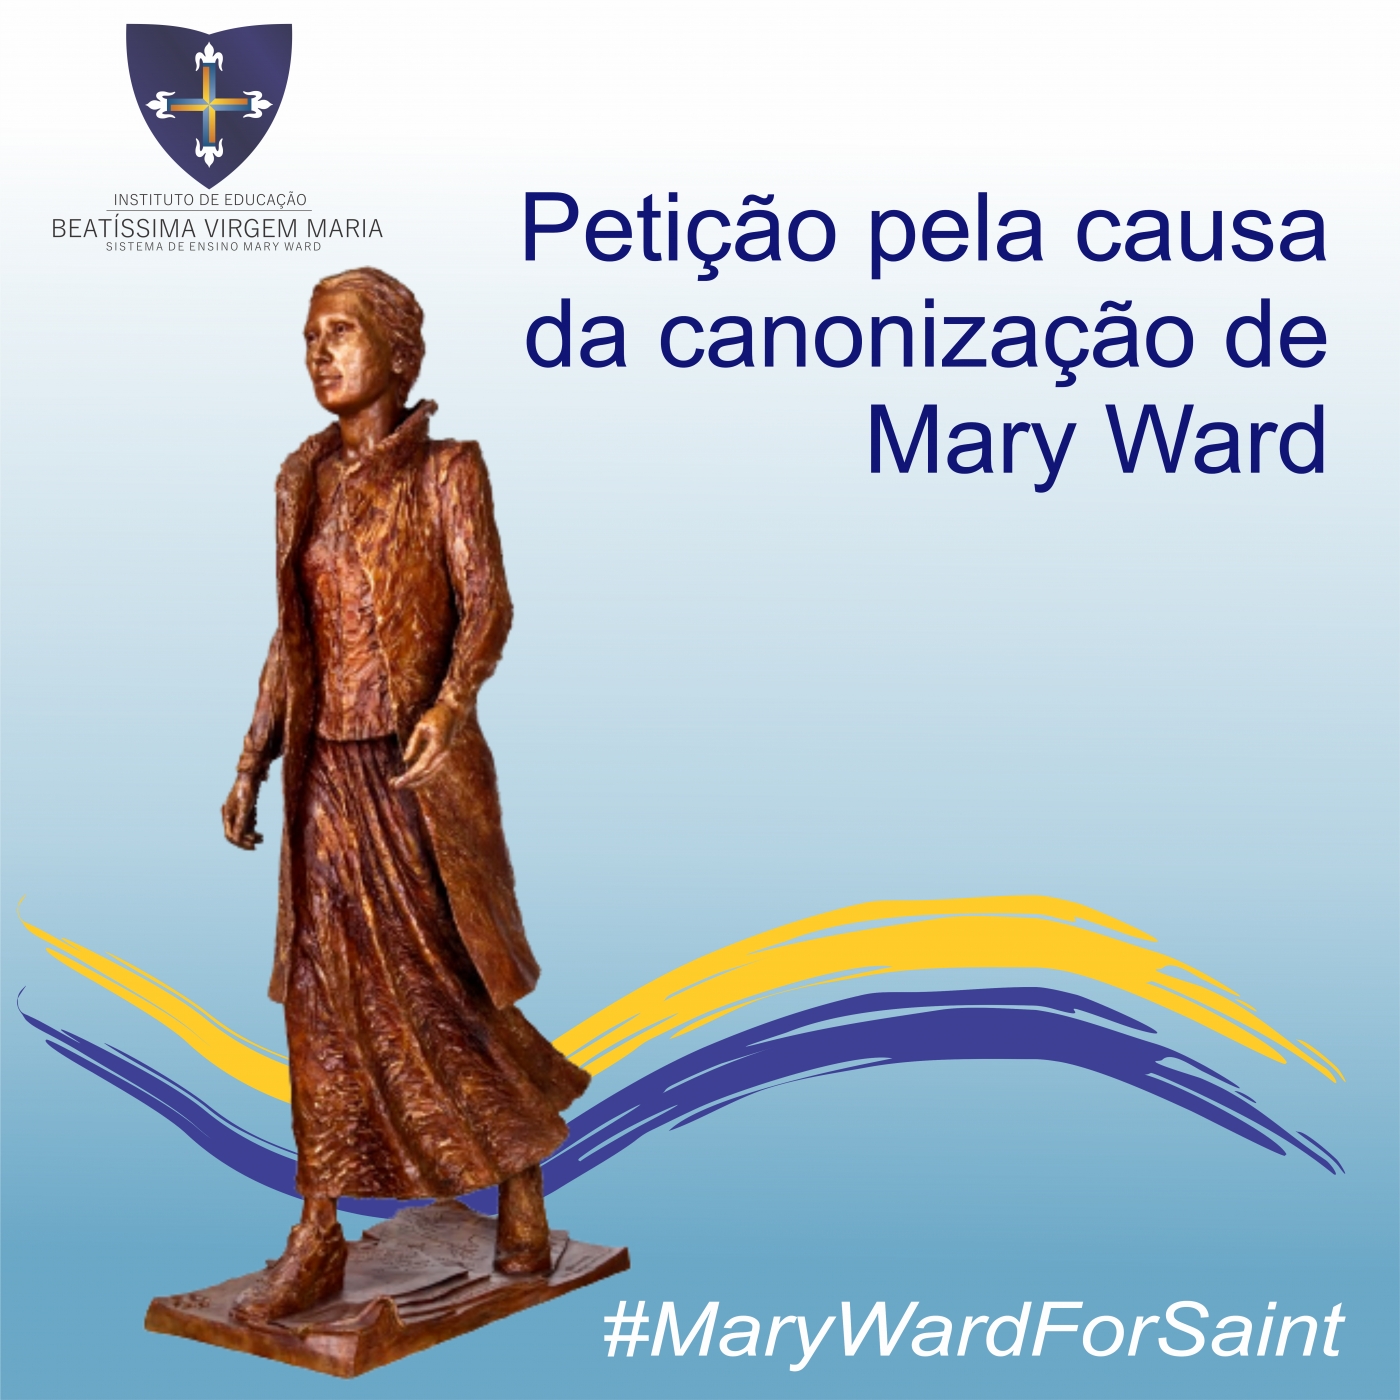 Petição pela causa da canonização de Mary Ward